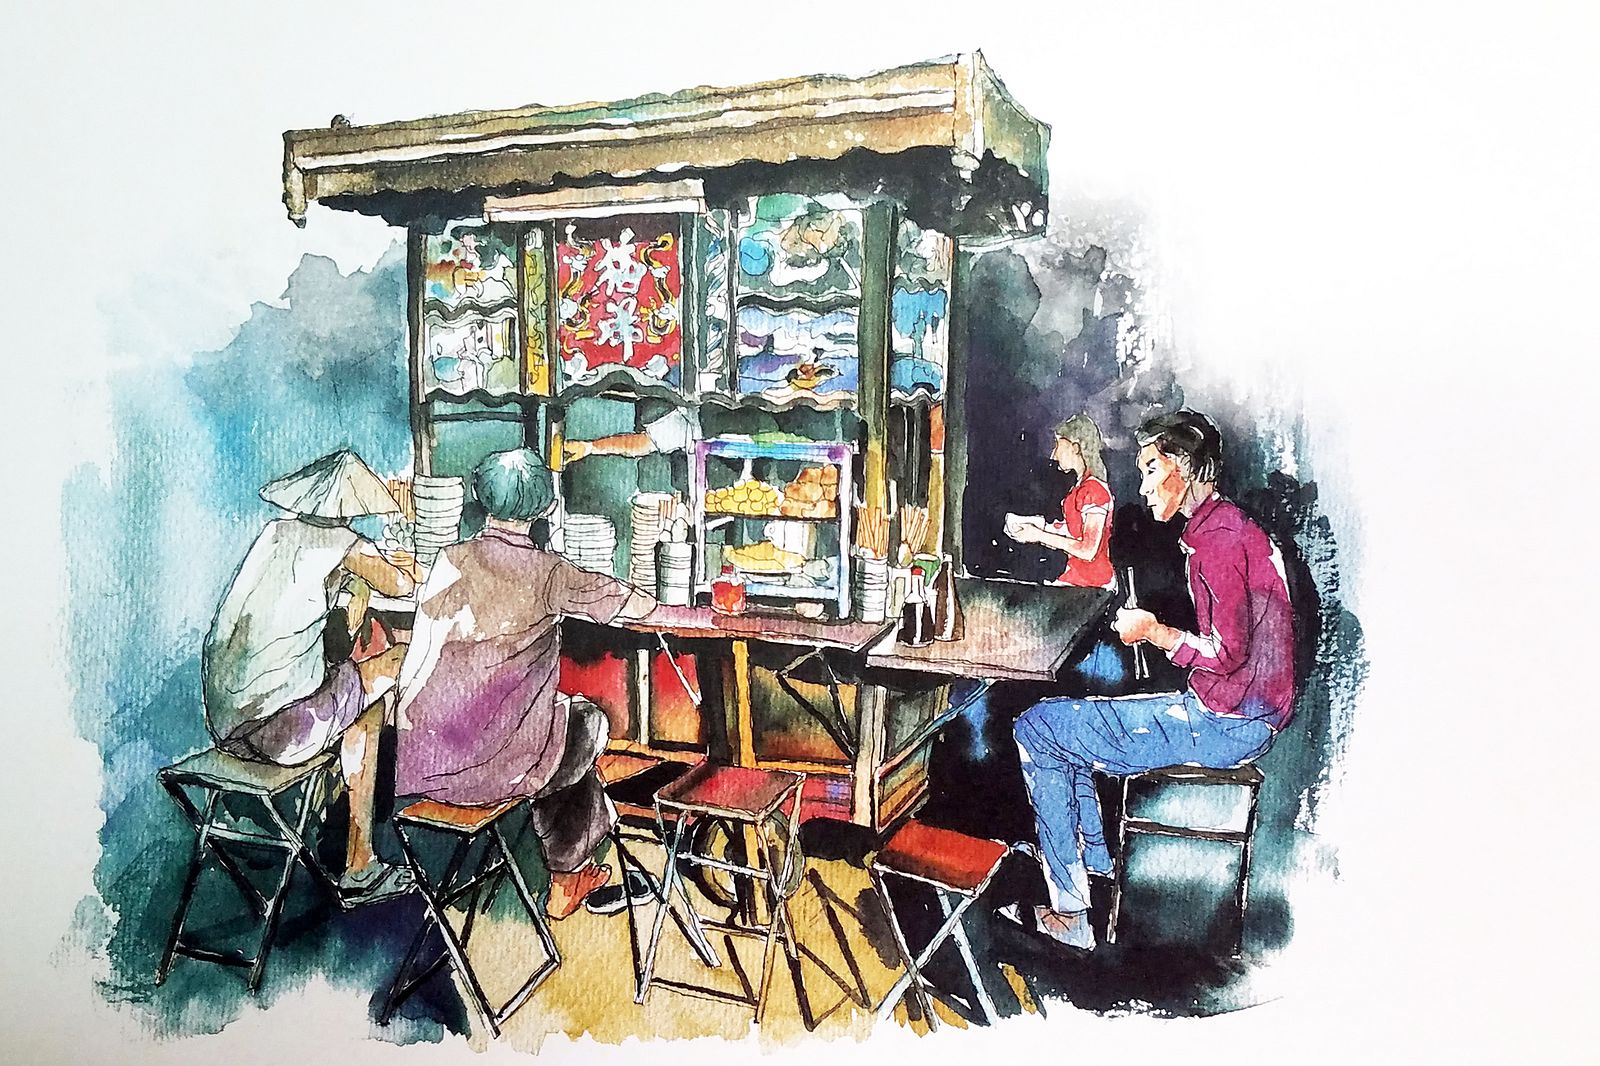 Watercolor Saigon Sketches: Điểm đến tiếp theo của bạn là triển lãm tranh Watercolor Saigon Sketches! Một chuyến hành trình thú vị đưa bạn đến khám phá những bức tranh sáp nhập giữa nét đẹp cổ điển với phong cách hội họa hiện đại. Sự đan xen của các dòng chảy sáng tạo làm nên một bức tranh đặc biệt, một lưu niệm đầy ý nghĩa cho bạn và gia đình.